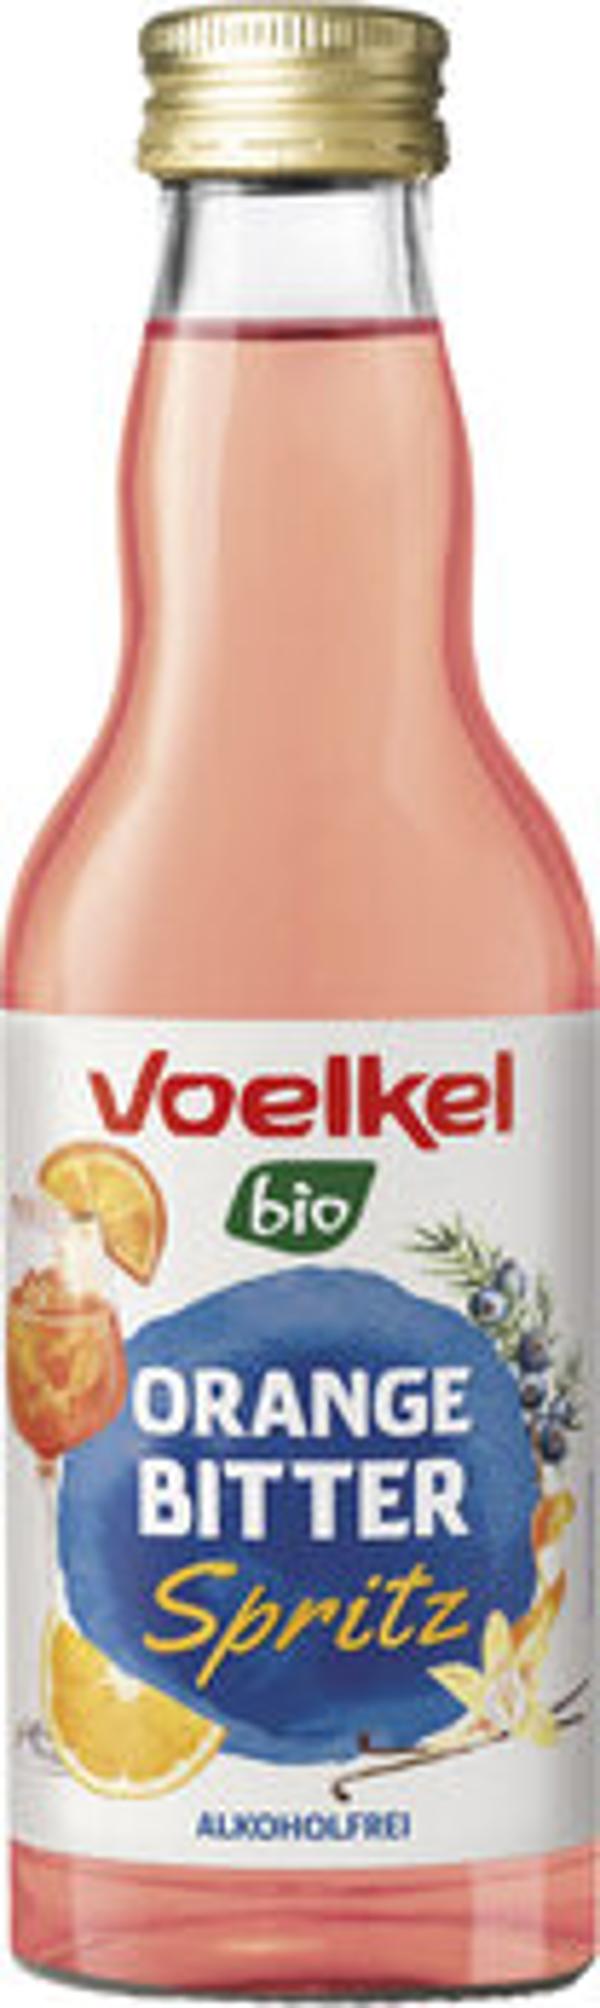 Produktfoto zu Voelkel Orange Bitter Spritz 0,2l